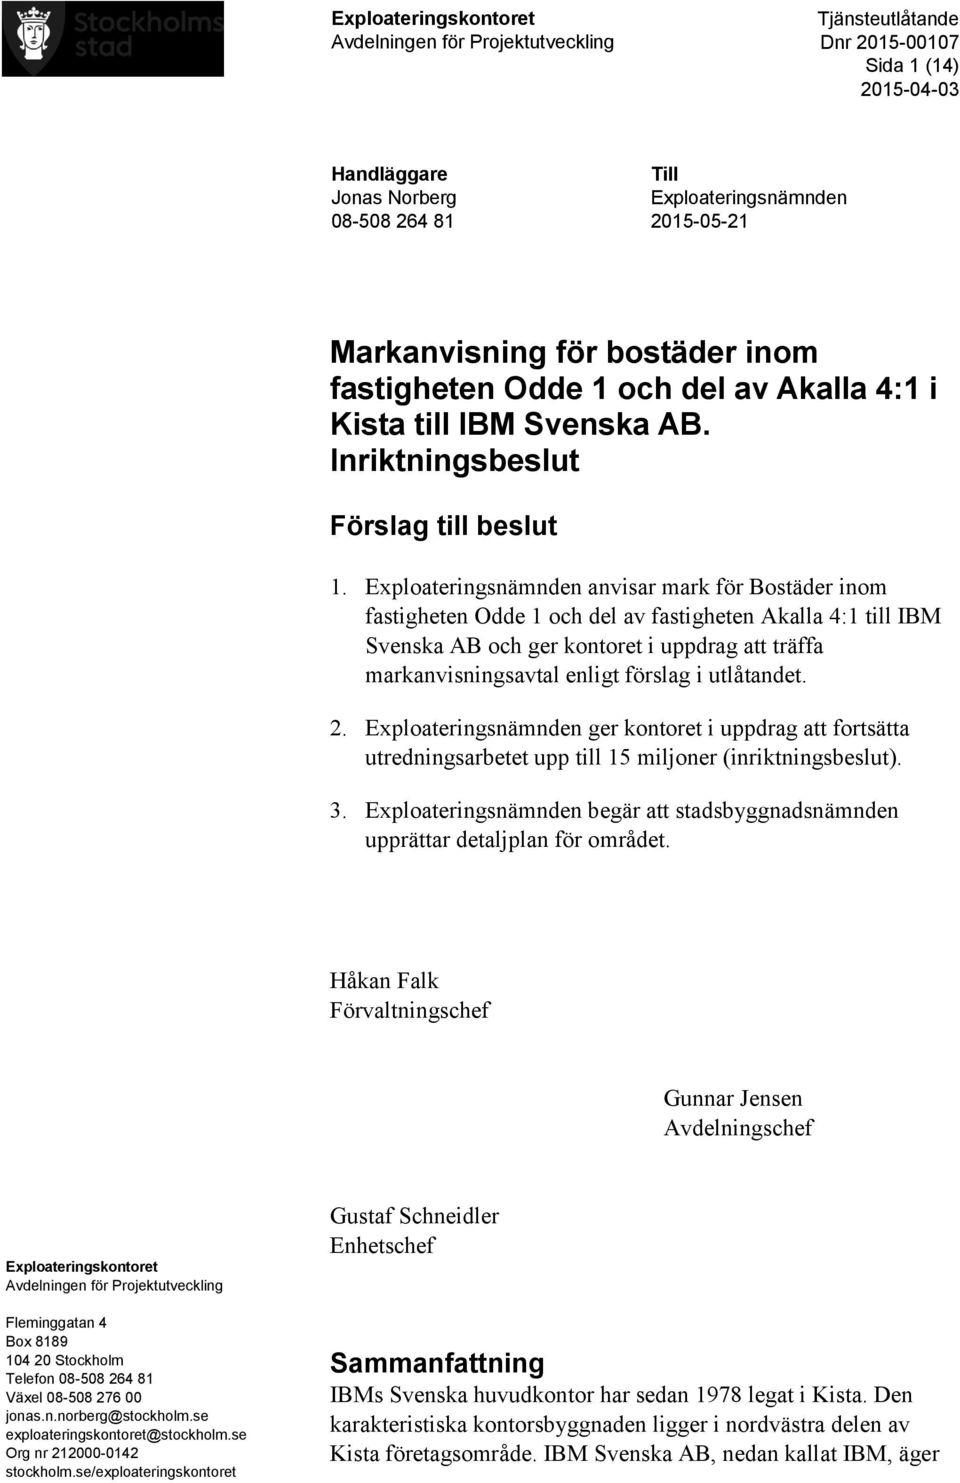 Exploateringsnämnden anvisar mark för Bostäder inom fastigheten Odde 1 och del av fastigheten Akalla 4:1 till IBM Svenska AB och ger kontoret i uppdrag att träffa markanvisningsavtal enligt förslag i